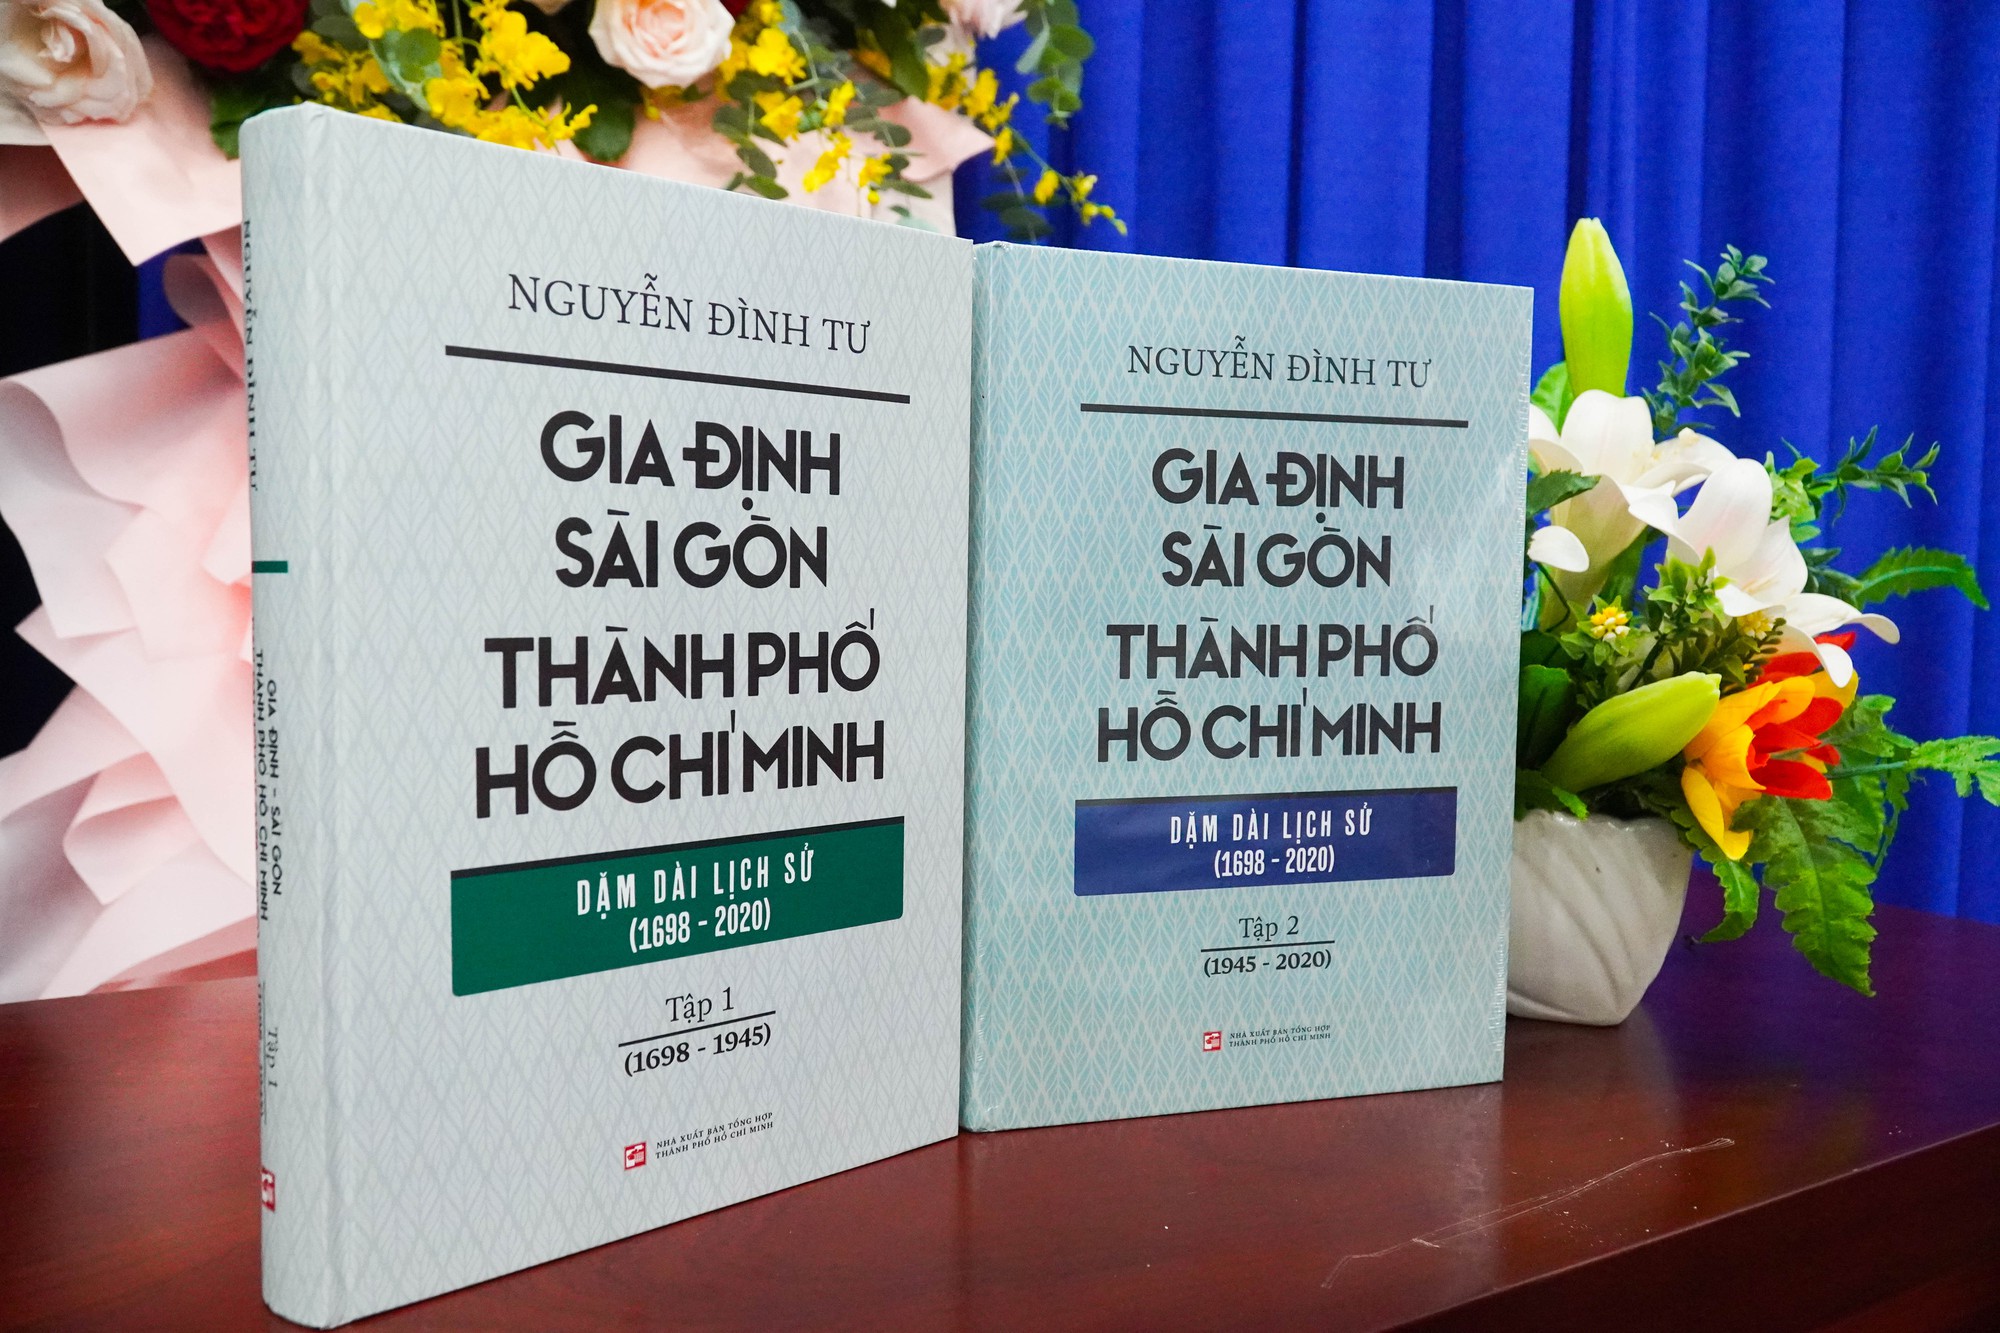 Nhà nghiên cứu Nguyễn Đình Tư nhận giải thưởng khoa học Trần Văn Giàu năm 2023 - Ảnh 1.